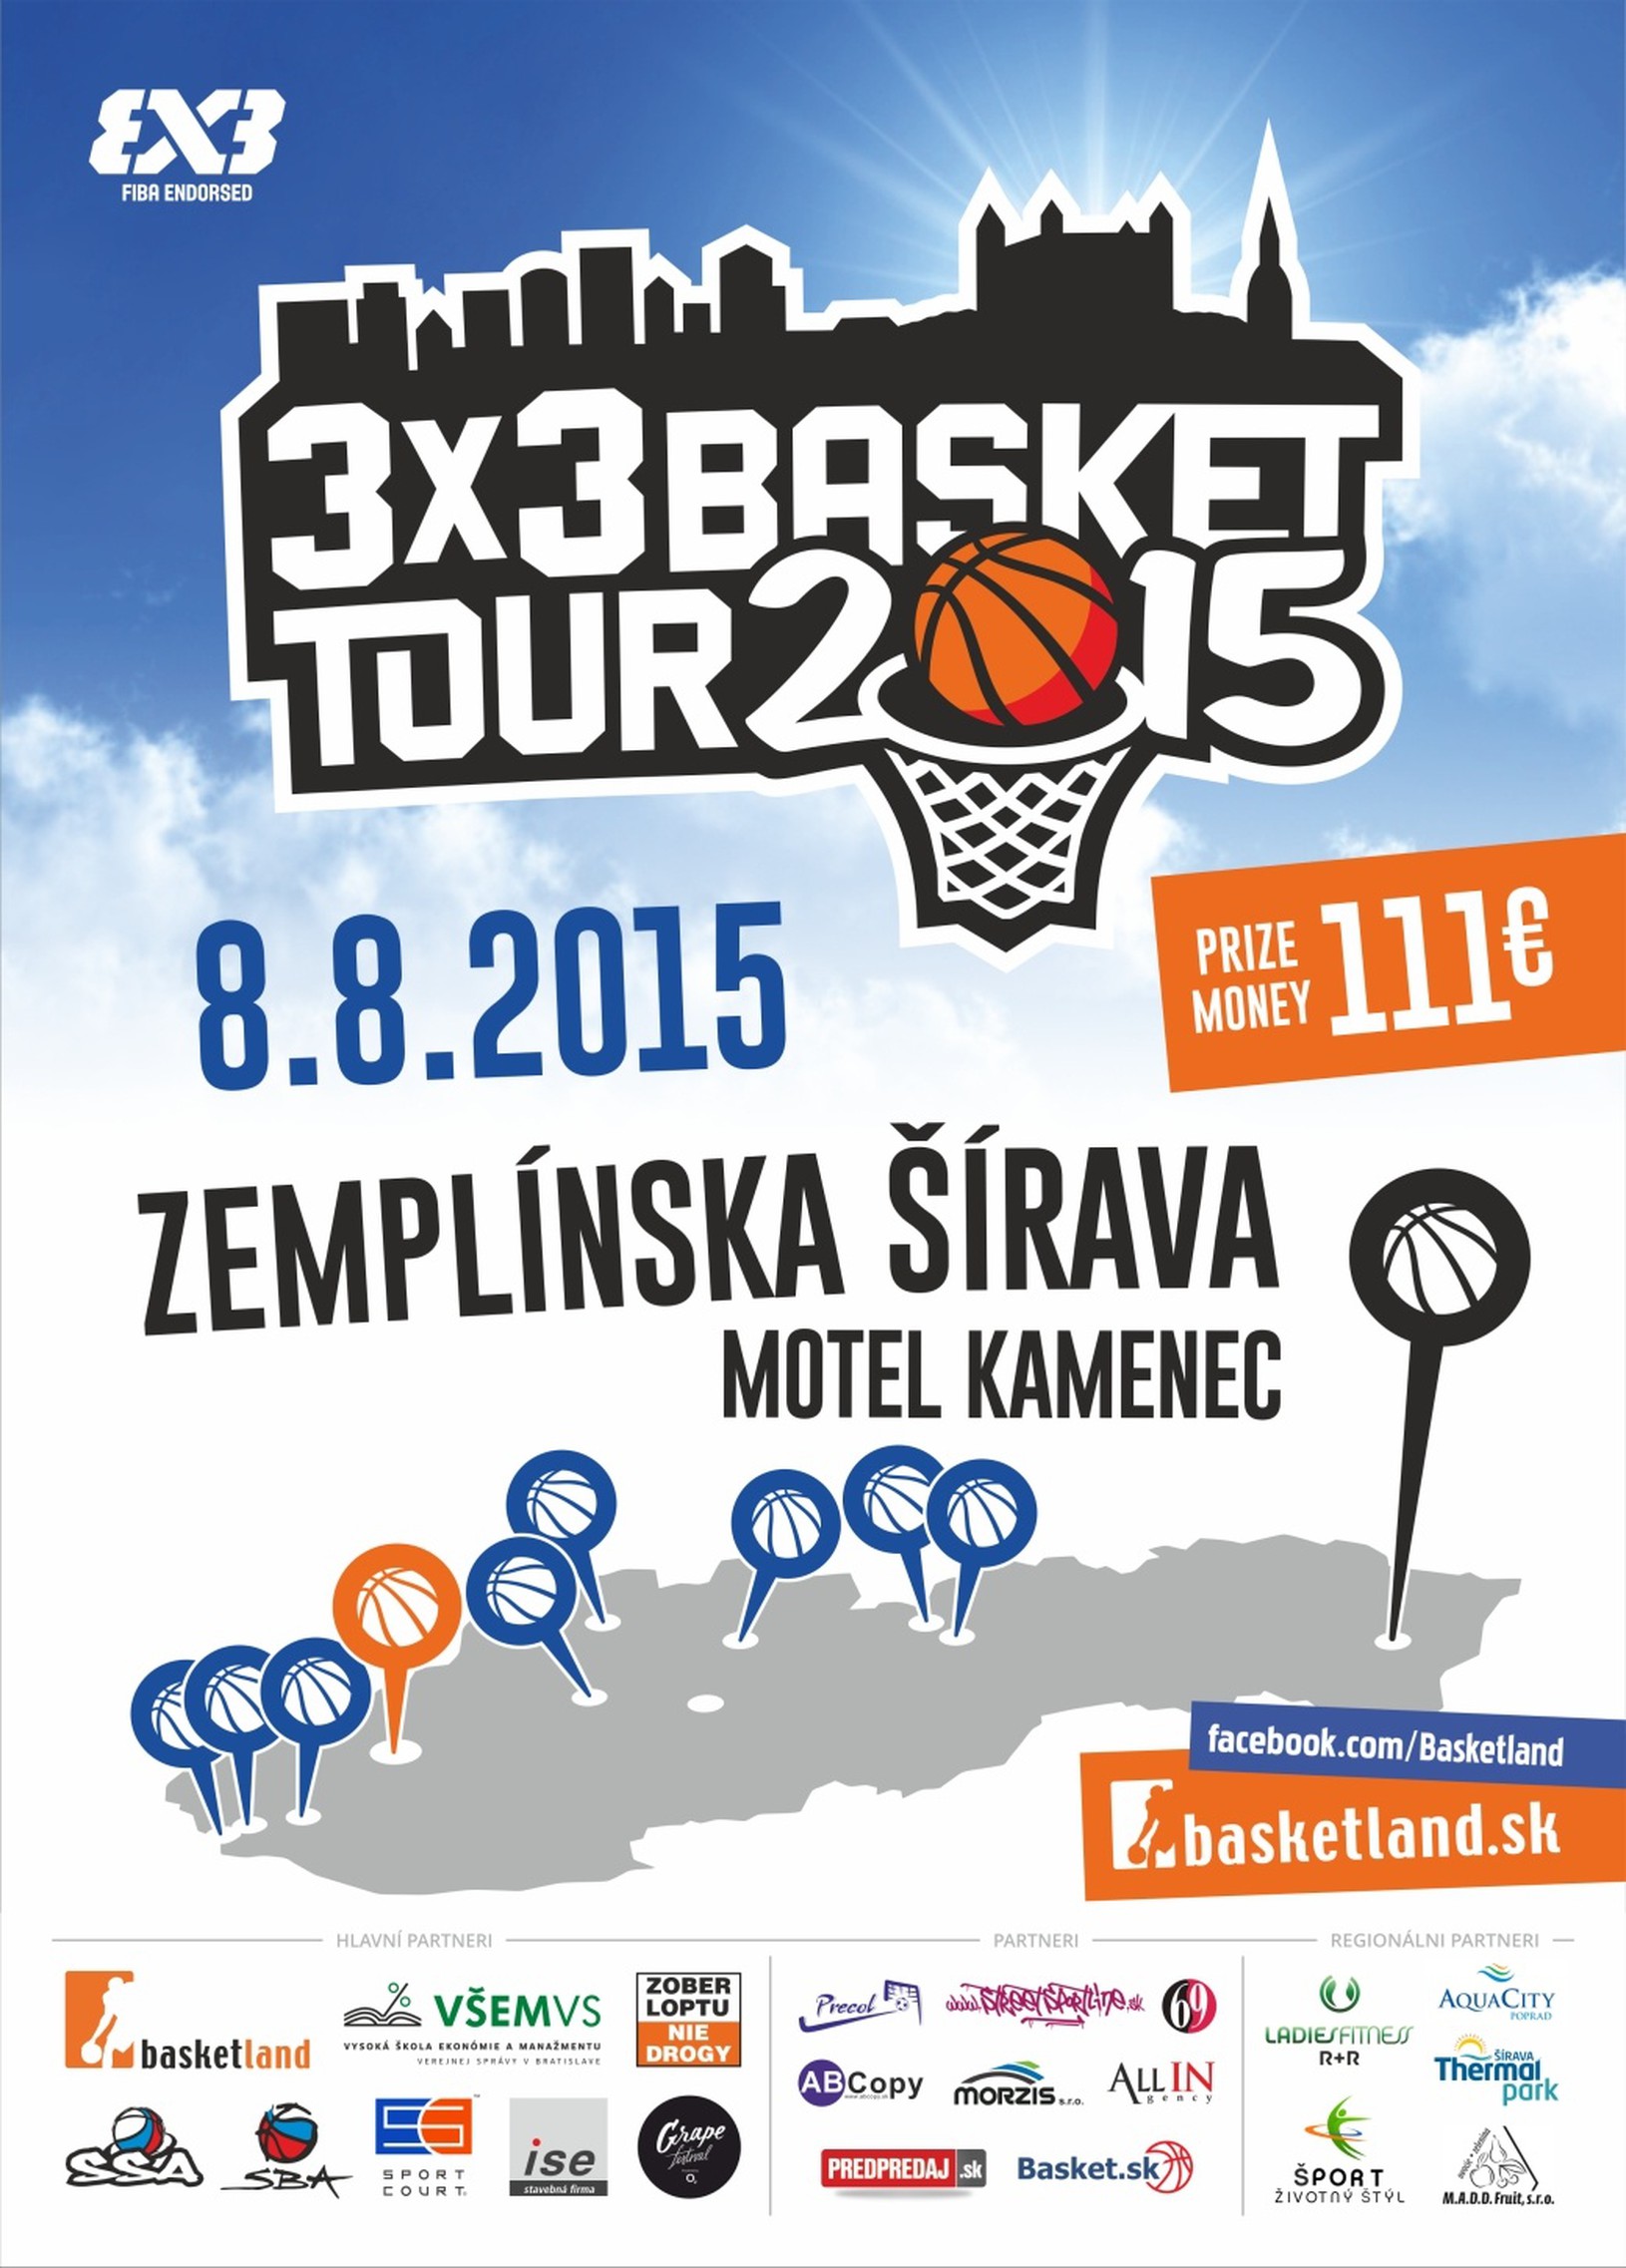 3x3 Basket Tour neobíde